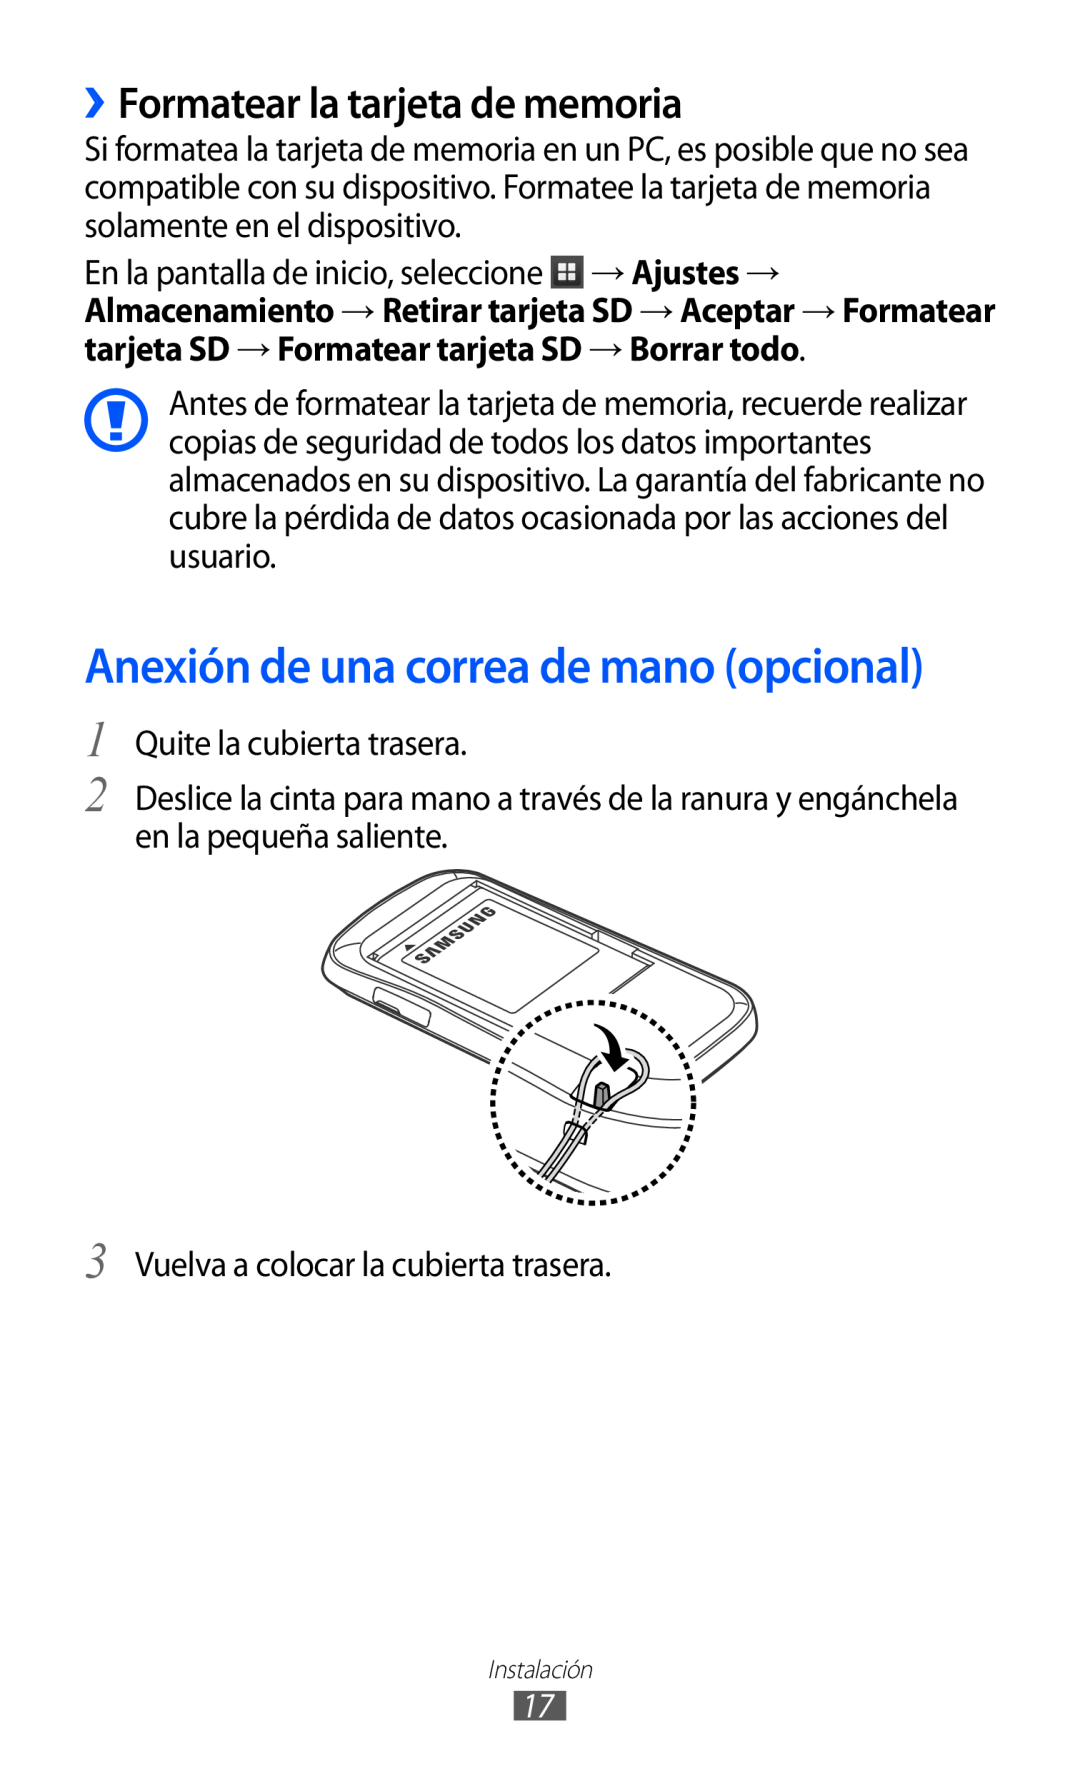 Samsung GT-S6500XKAATL, GT-S6500RWDTMN manual ››Formatear la tarjeta de memoria, Anexión de una correa de mano opcional 